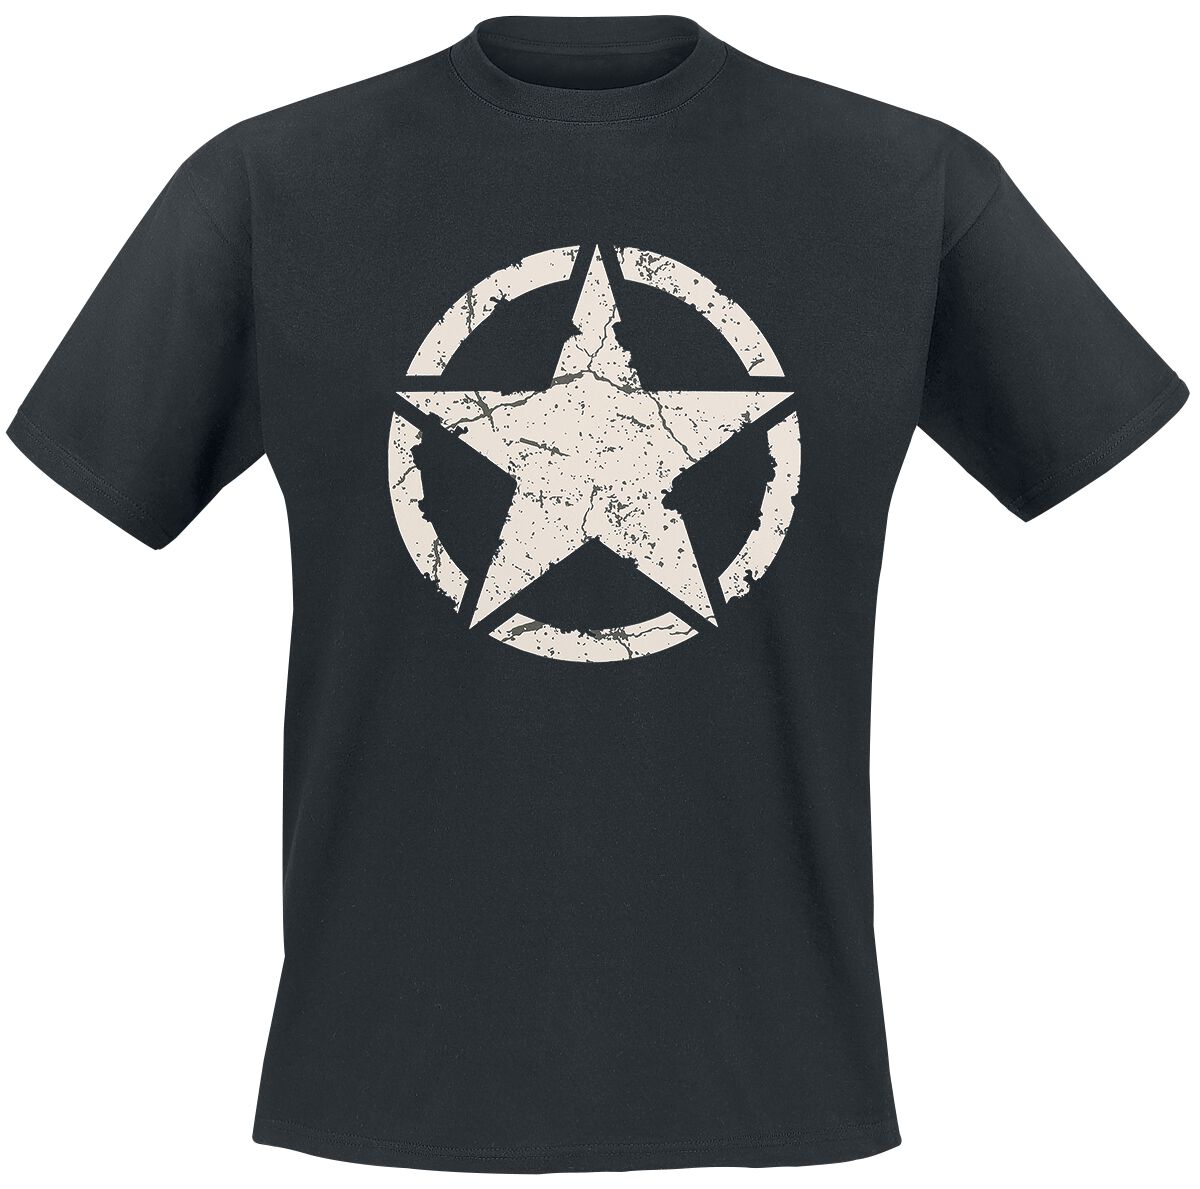 Gasoline Bandit - Rockabilly T-Shirt - Army Star - S bis 4XL - für Männer - Größe M - schwarz